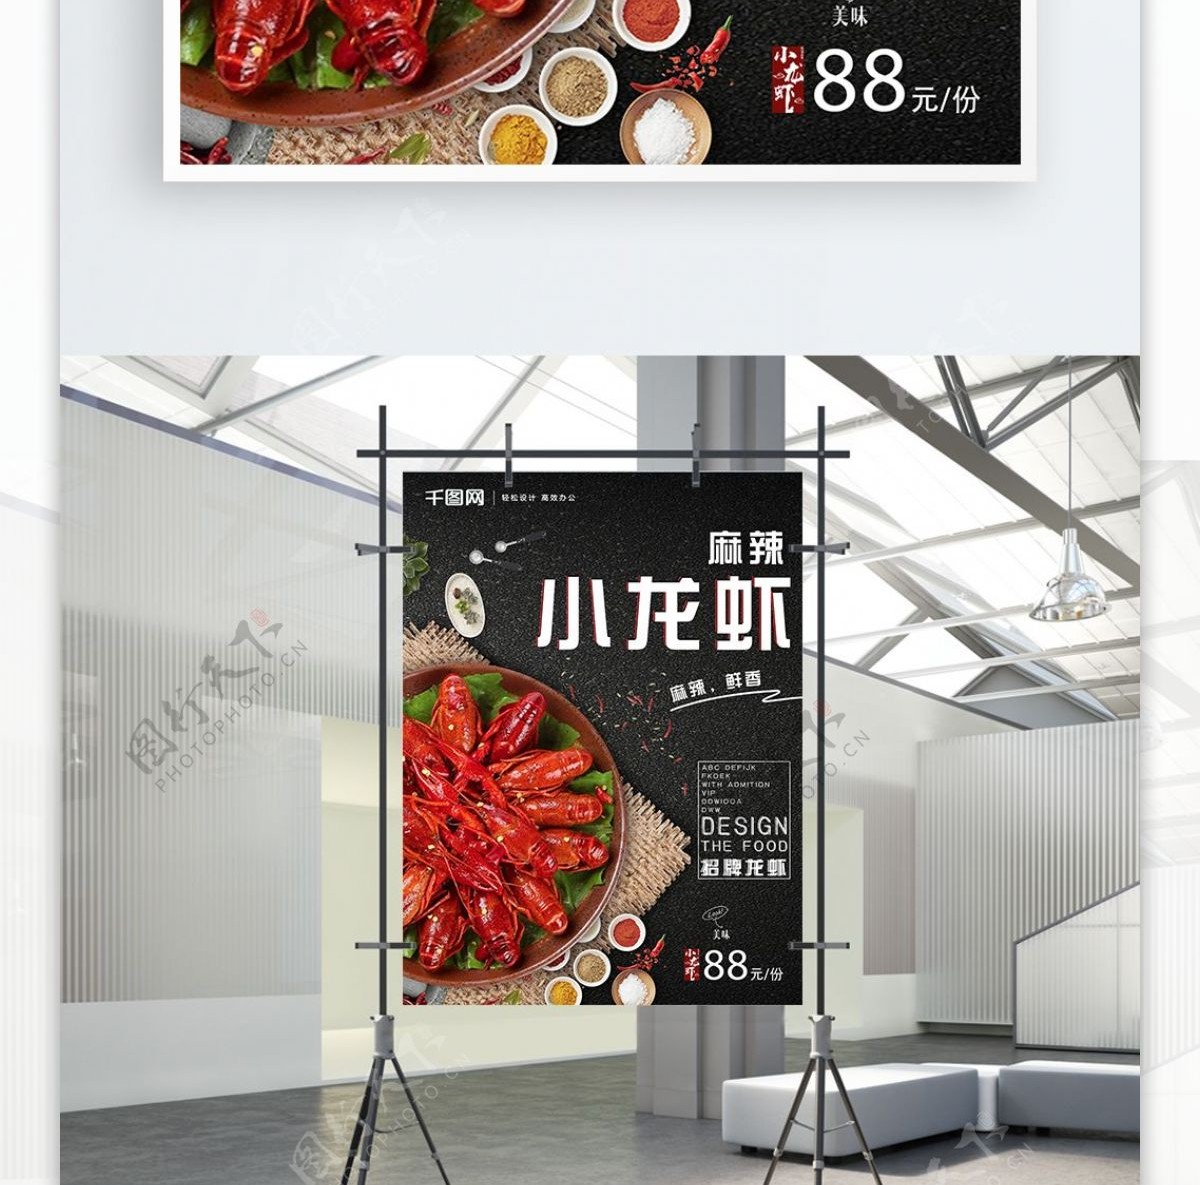 夏季麻辣小龙虾活动促销海报